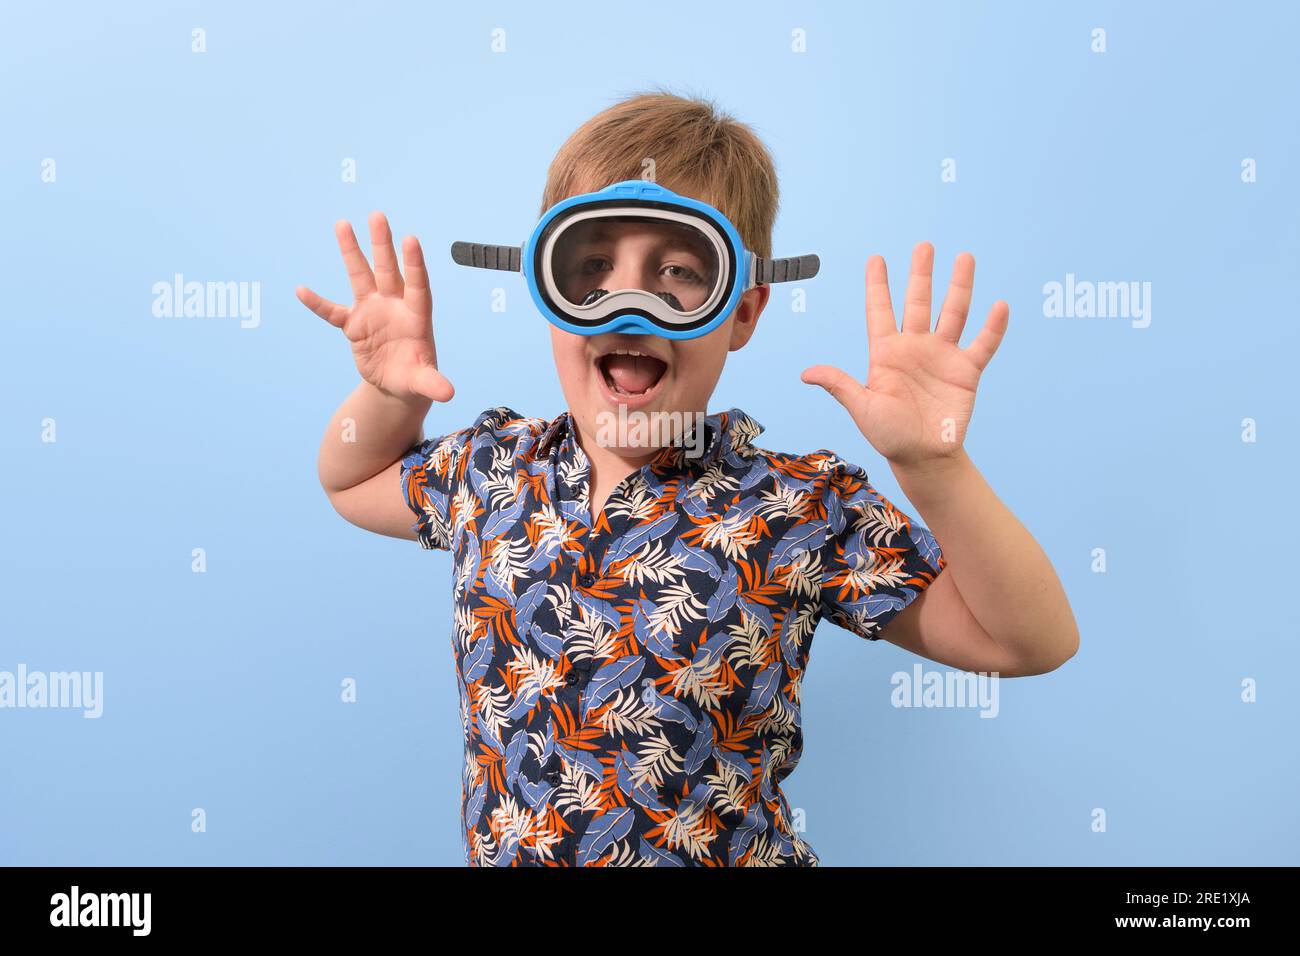 Un garçon dans un masque de plongée dans une chemise hawaïenne démontre des réjouissances dans les vacances Banque D'Images